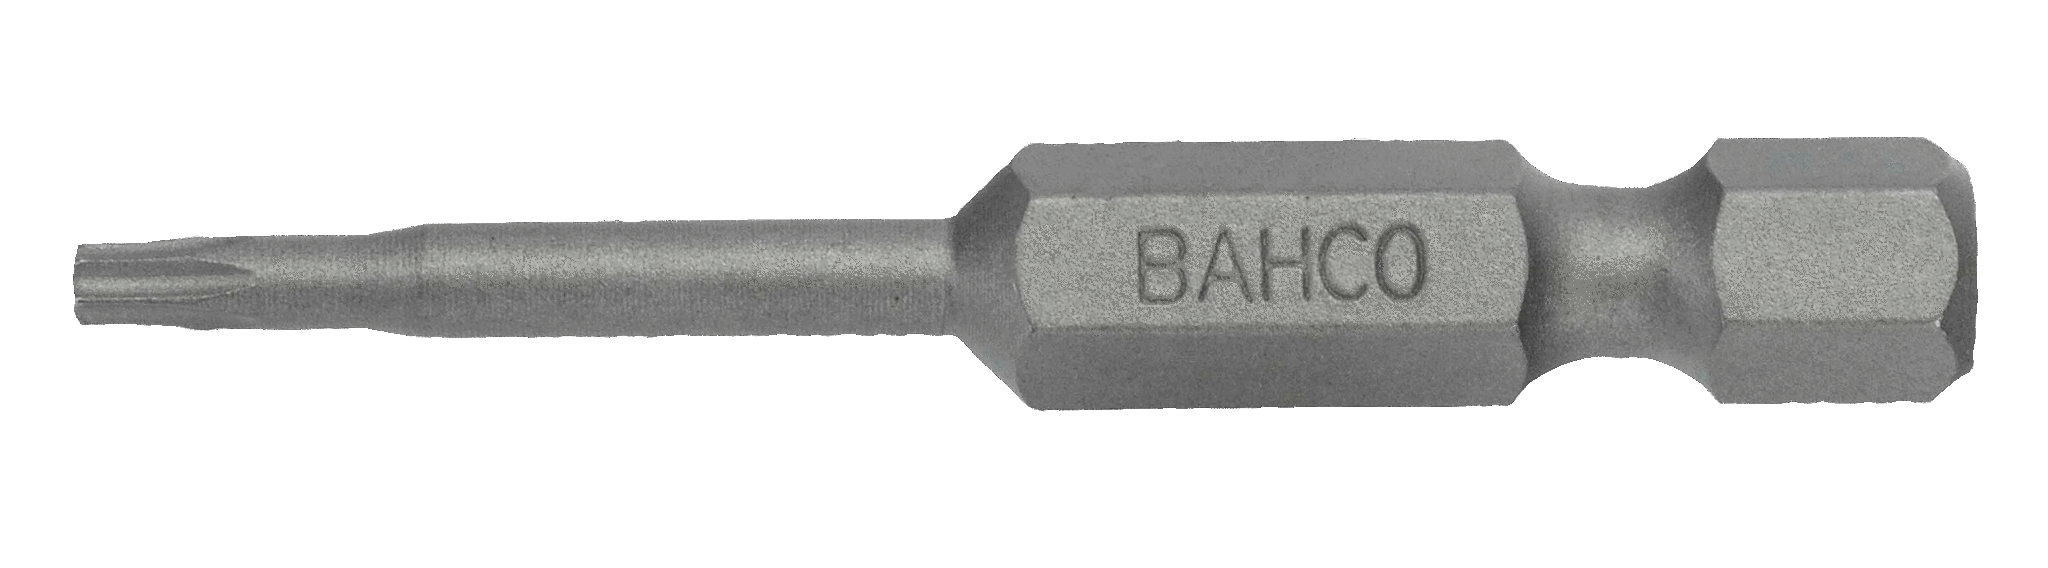 картинка Стандартные биты для отверток Torx®, 50 мм BAHCO 59S/50T20 от магазина "Элит-инструмент"